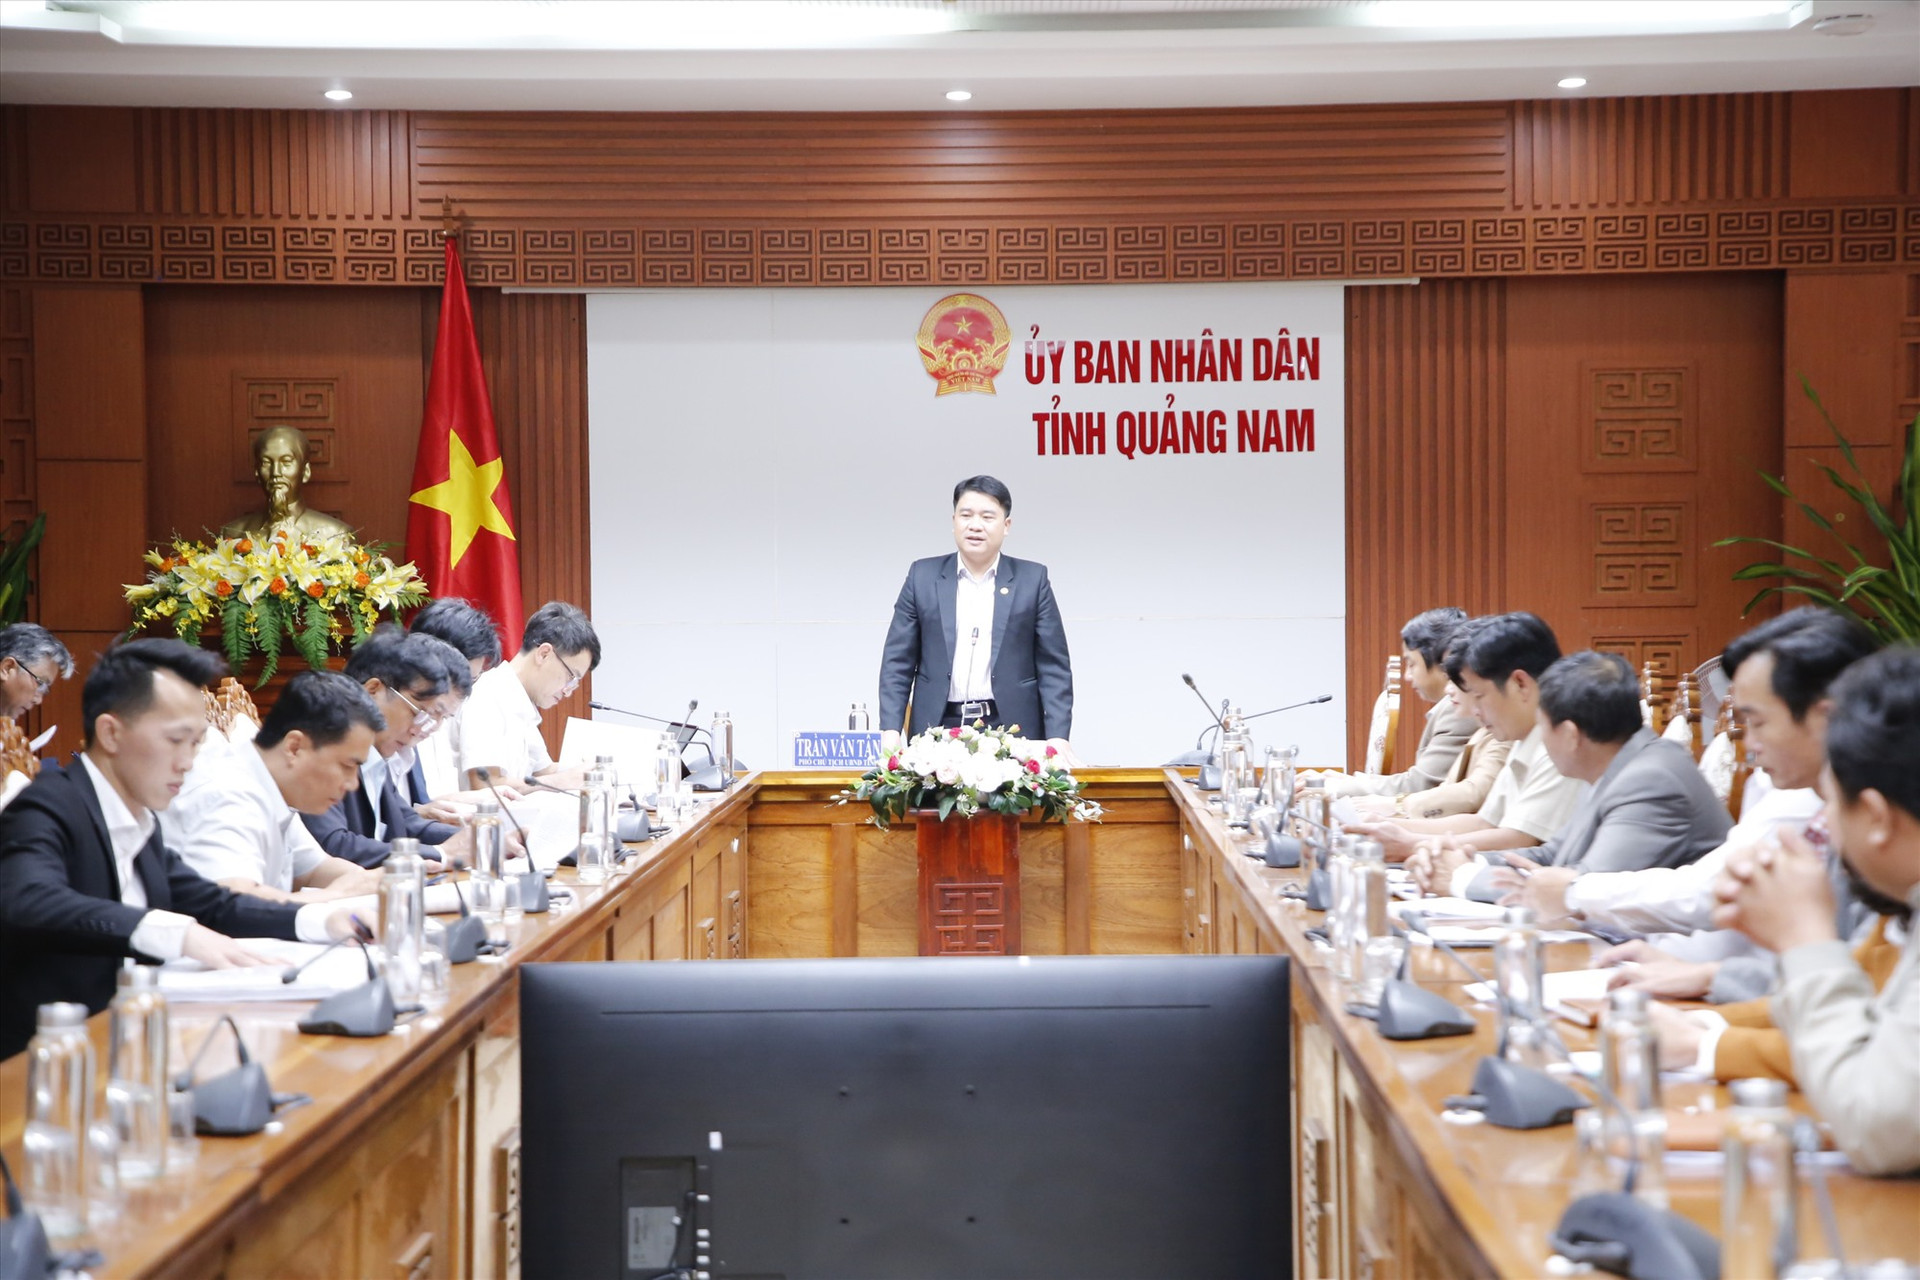 Phó Chủ tịch UBND tỉnh Trần Văn Tân chủ trì buổi làm việc. Ảnh: T.C